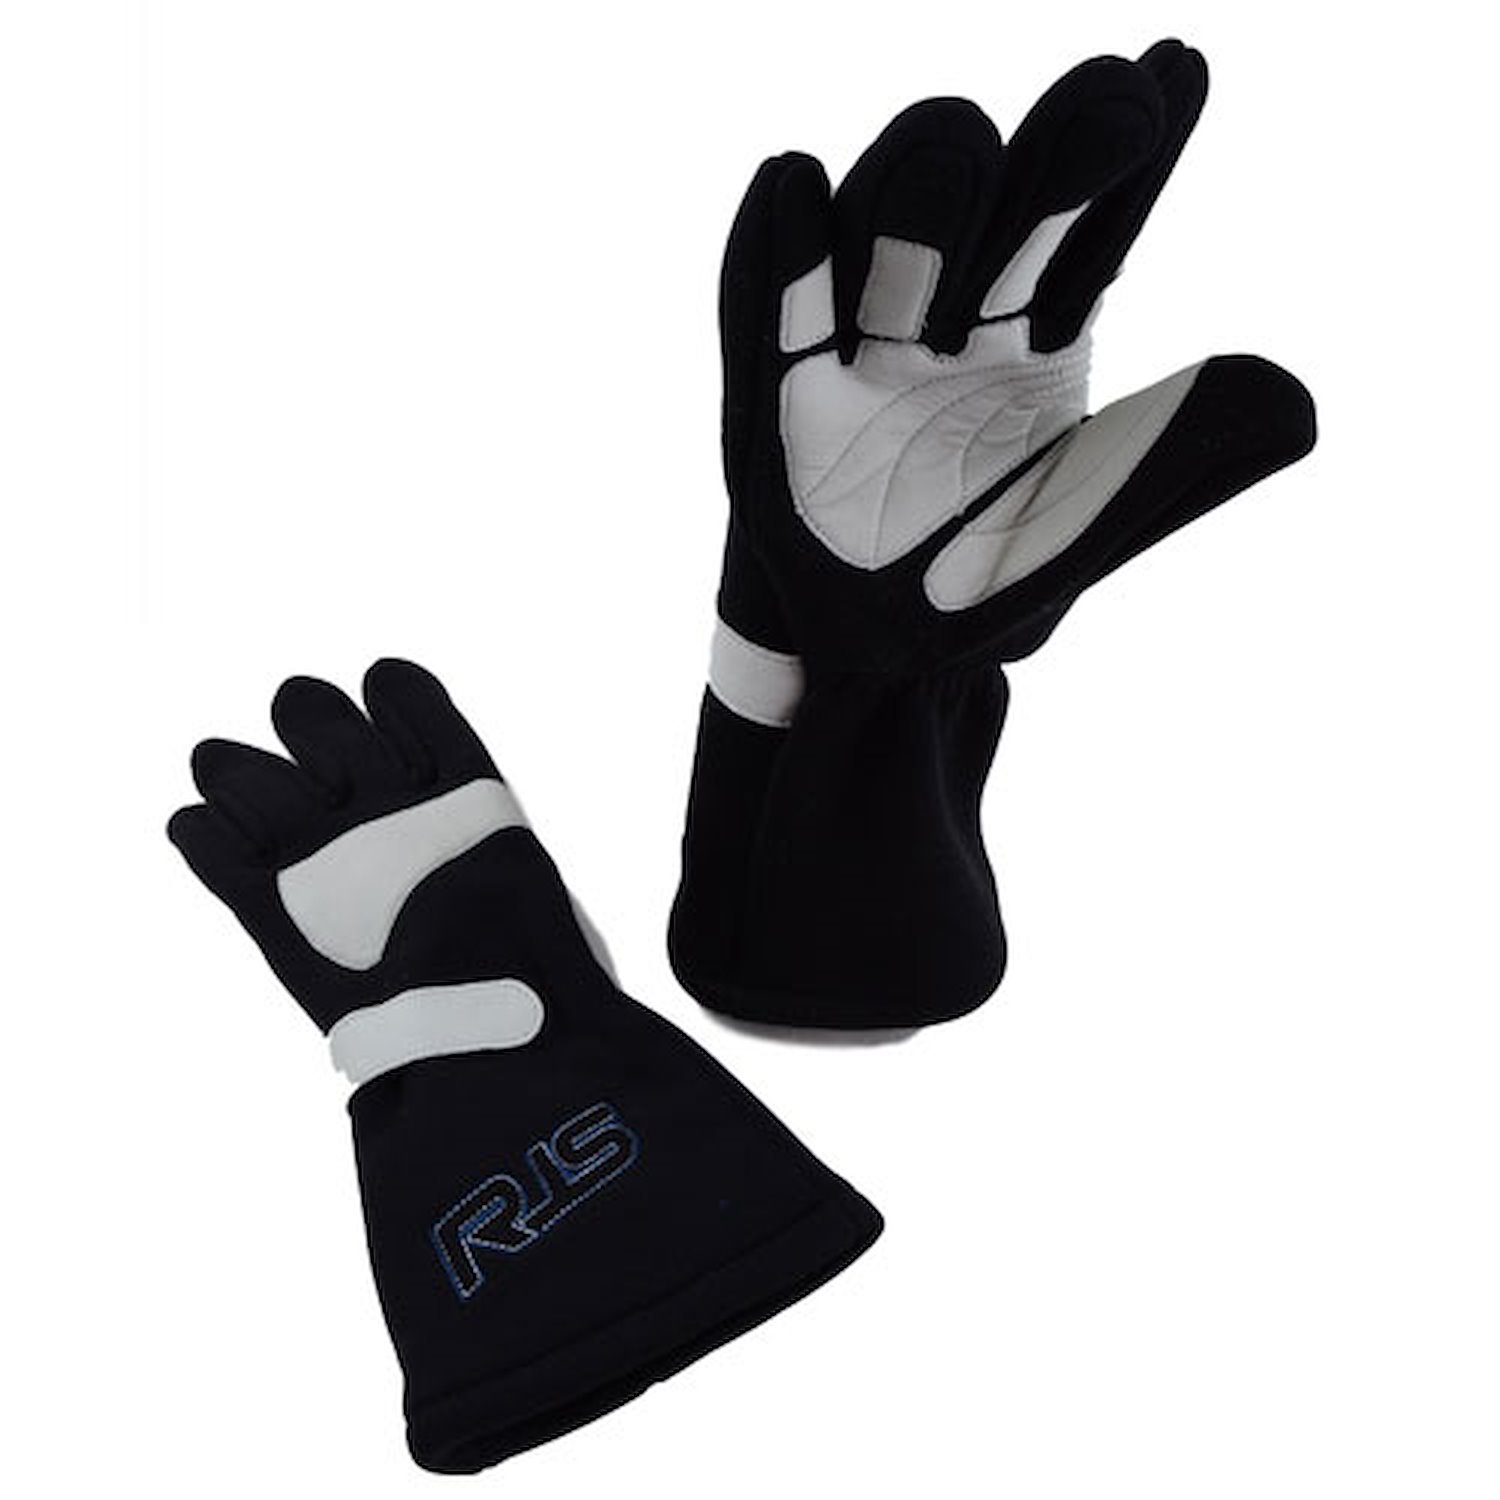 SFI 20 Racing Gloves 2X-Large